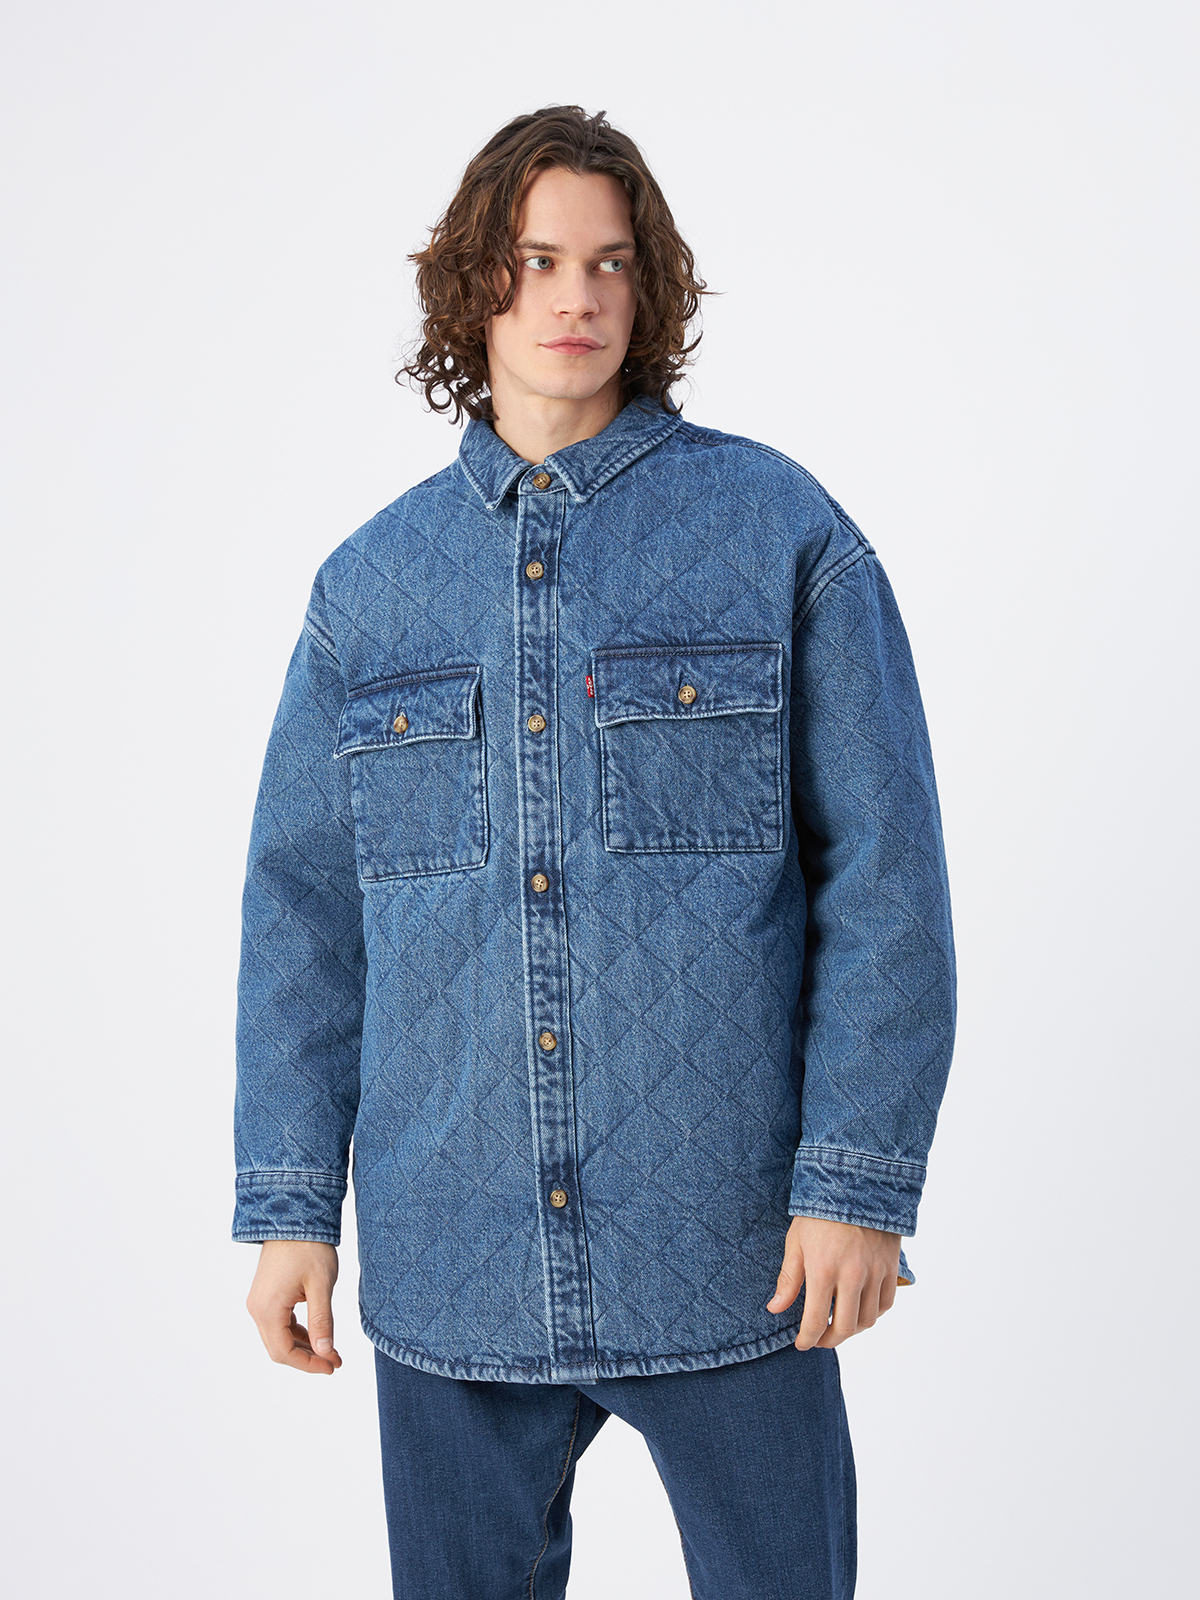 Джинсовая куртка мужская Levi's A0682-0001 синяя M